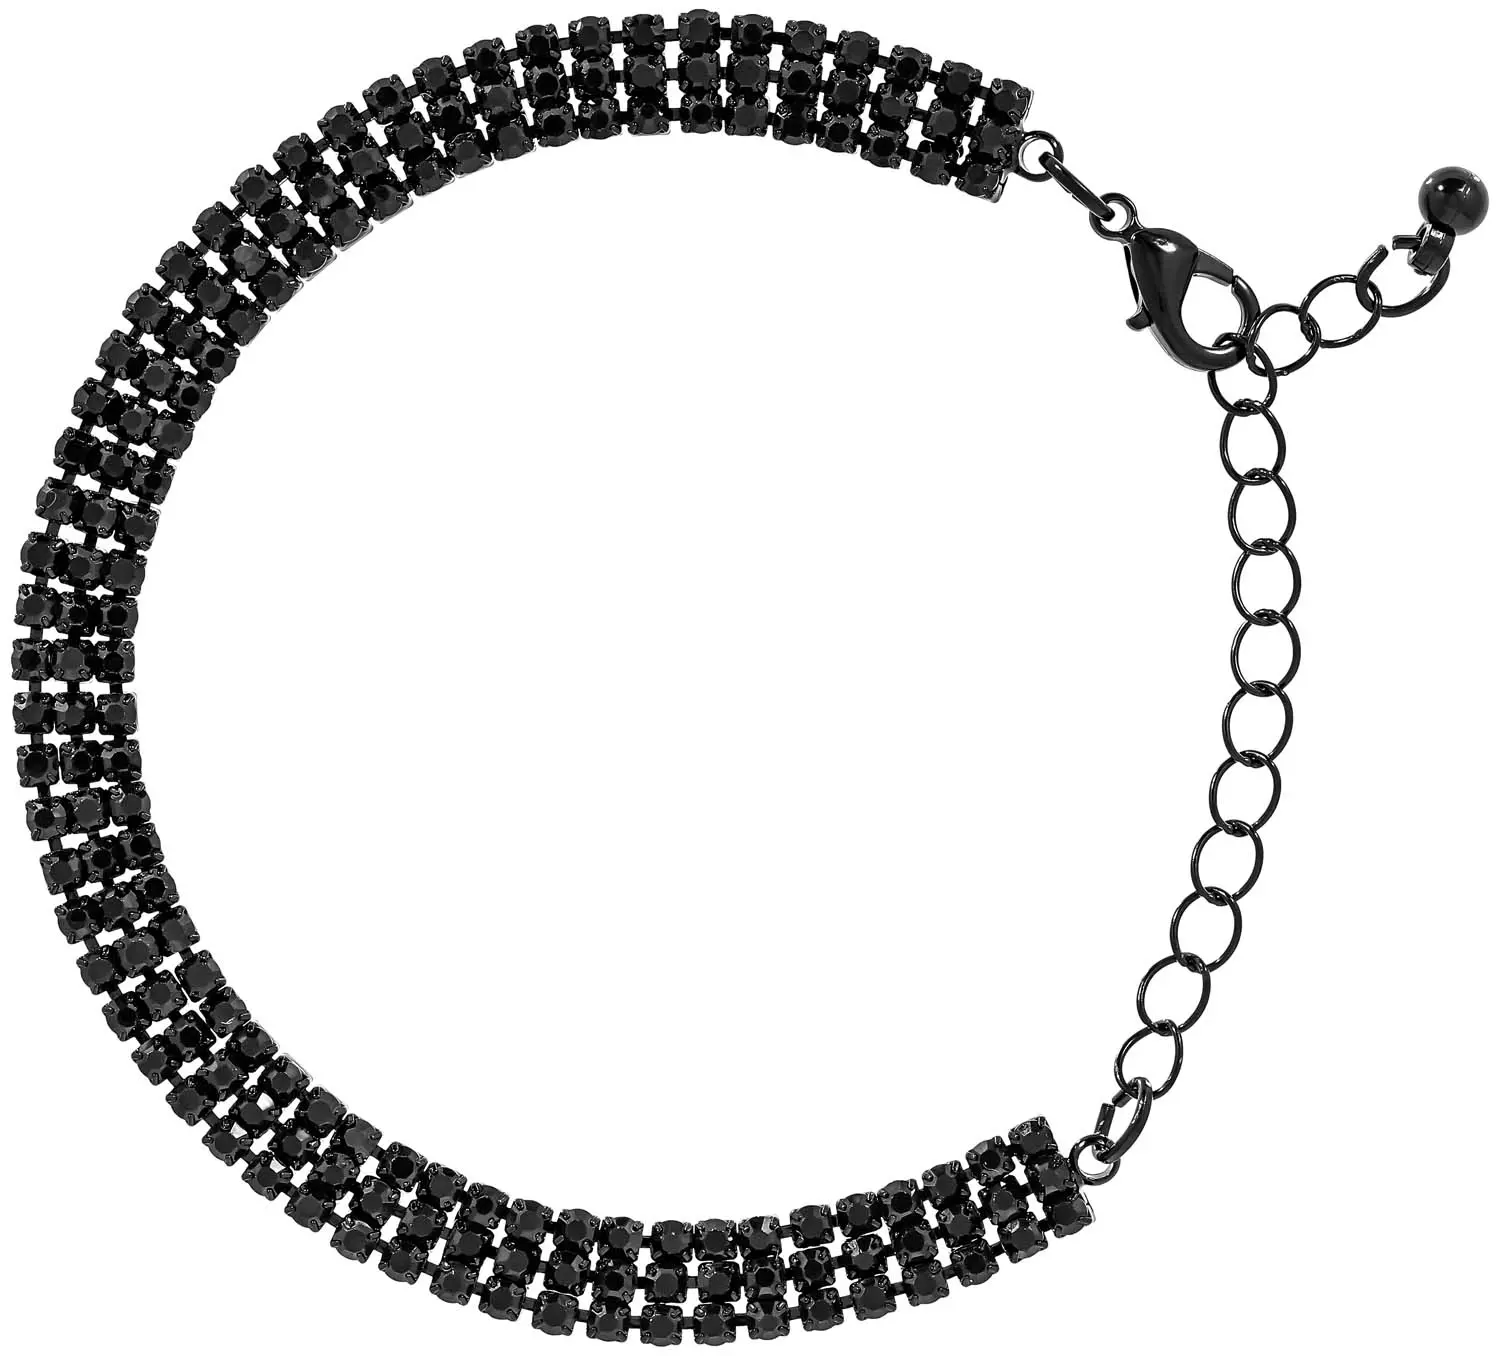 Bracelet - Delightful Black